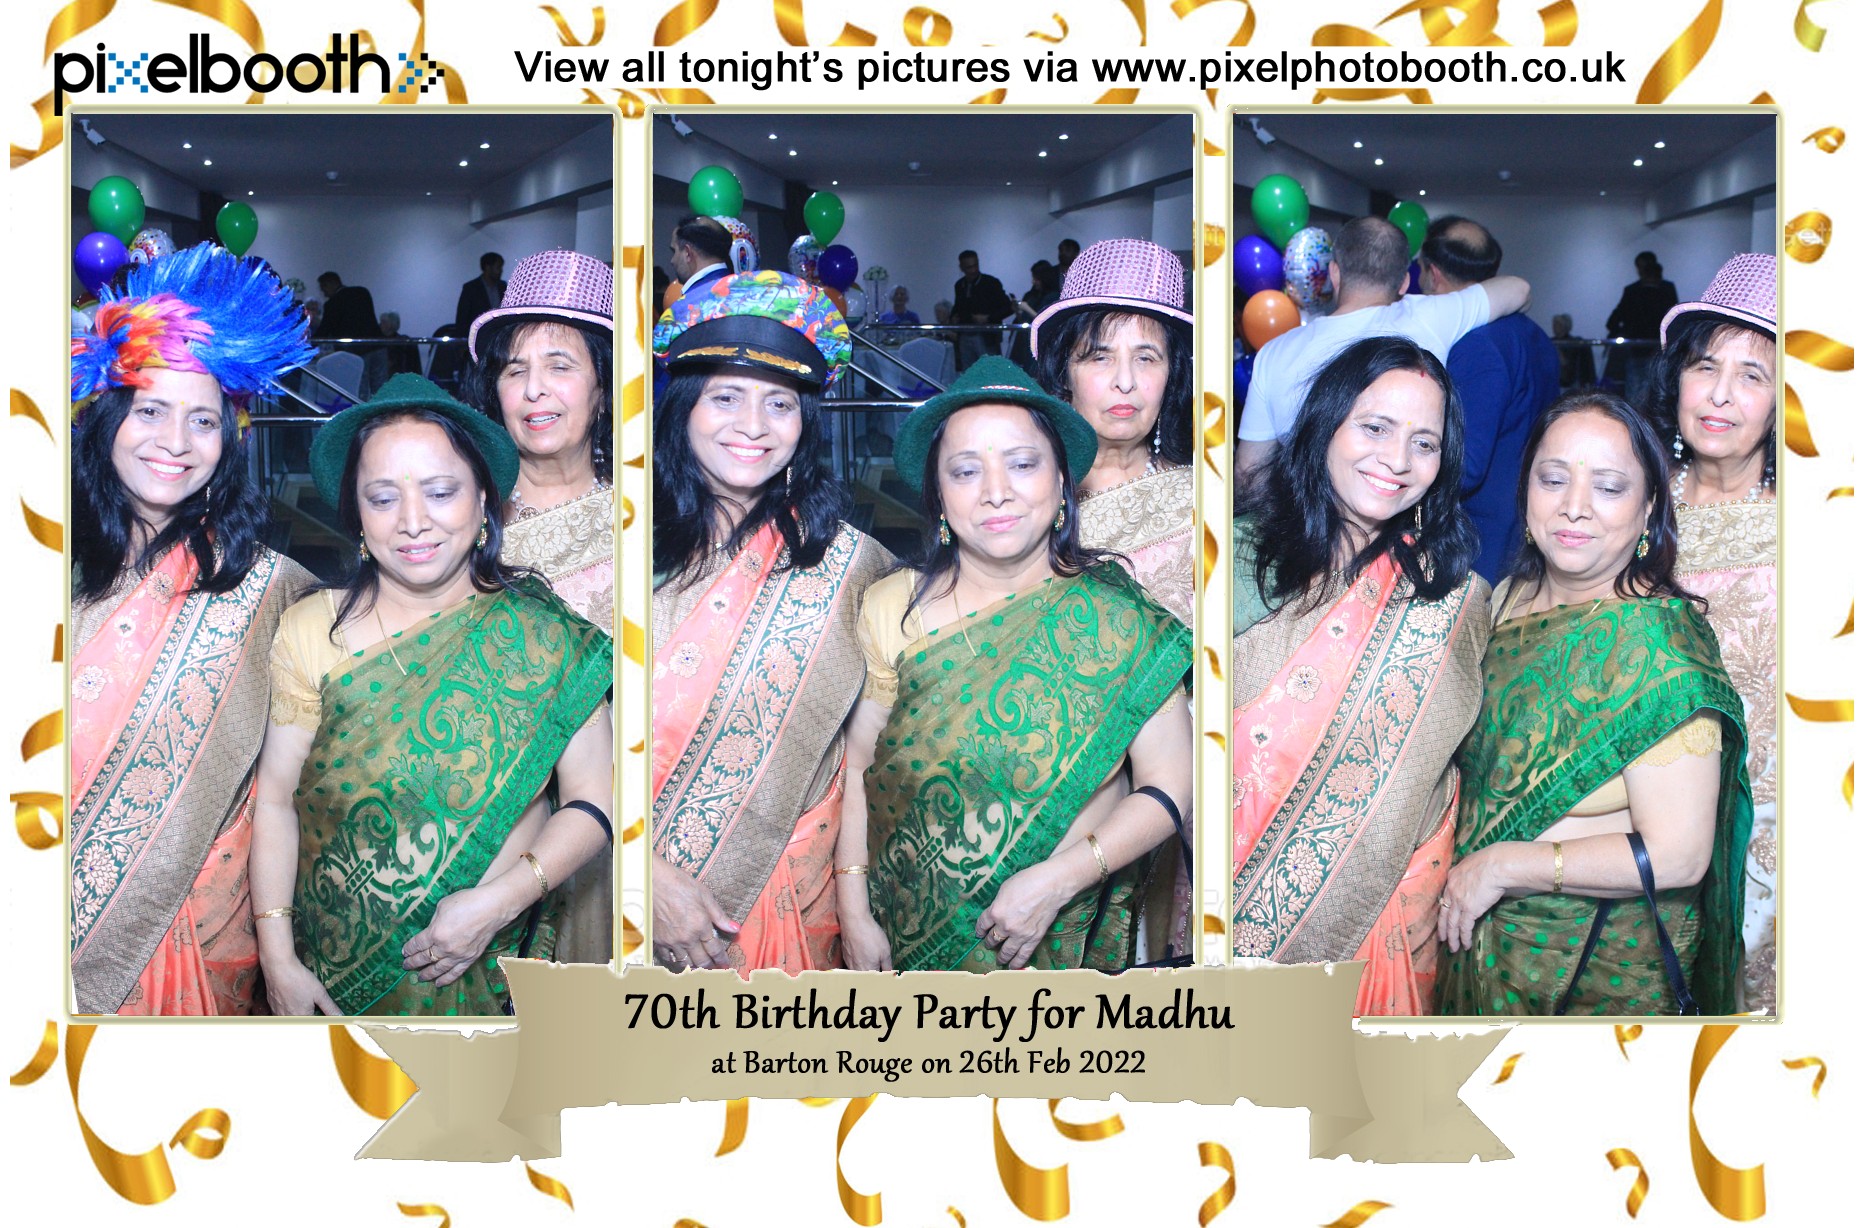 28th Feb 2022: 70th Birthday Party for Madhu